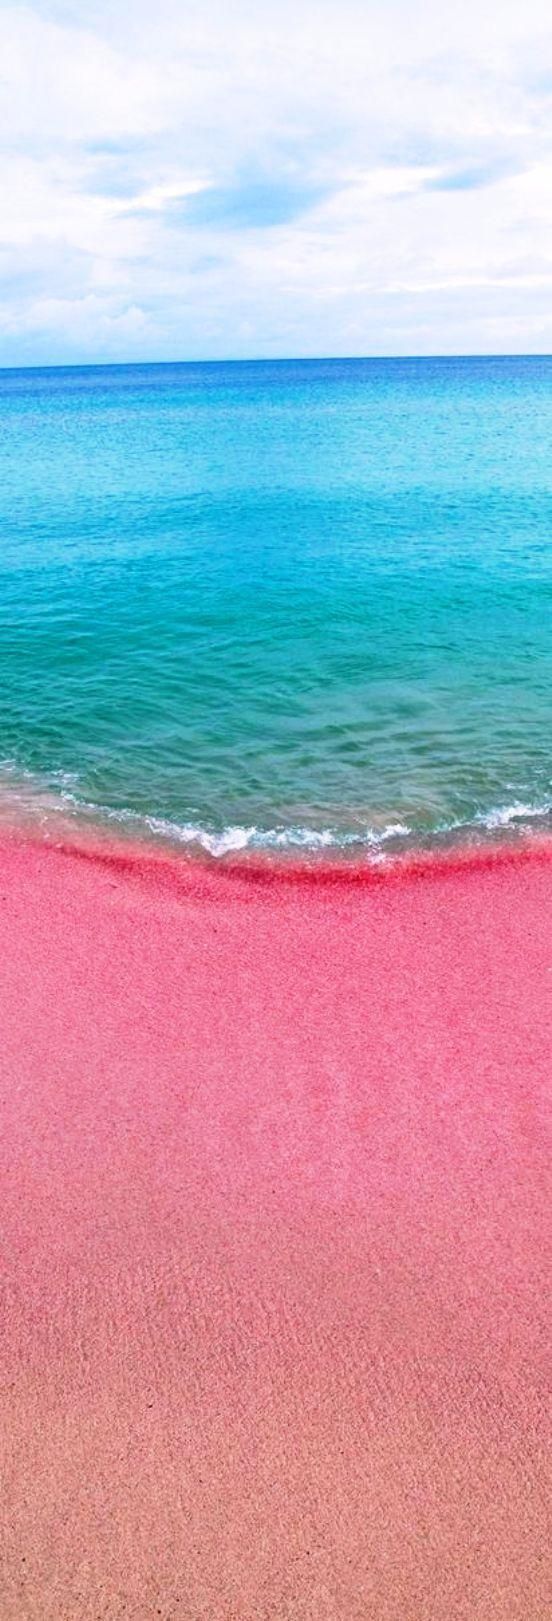 Коралловый песок! - фото 5781288 Свадебное агентство Александры Фукс